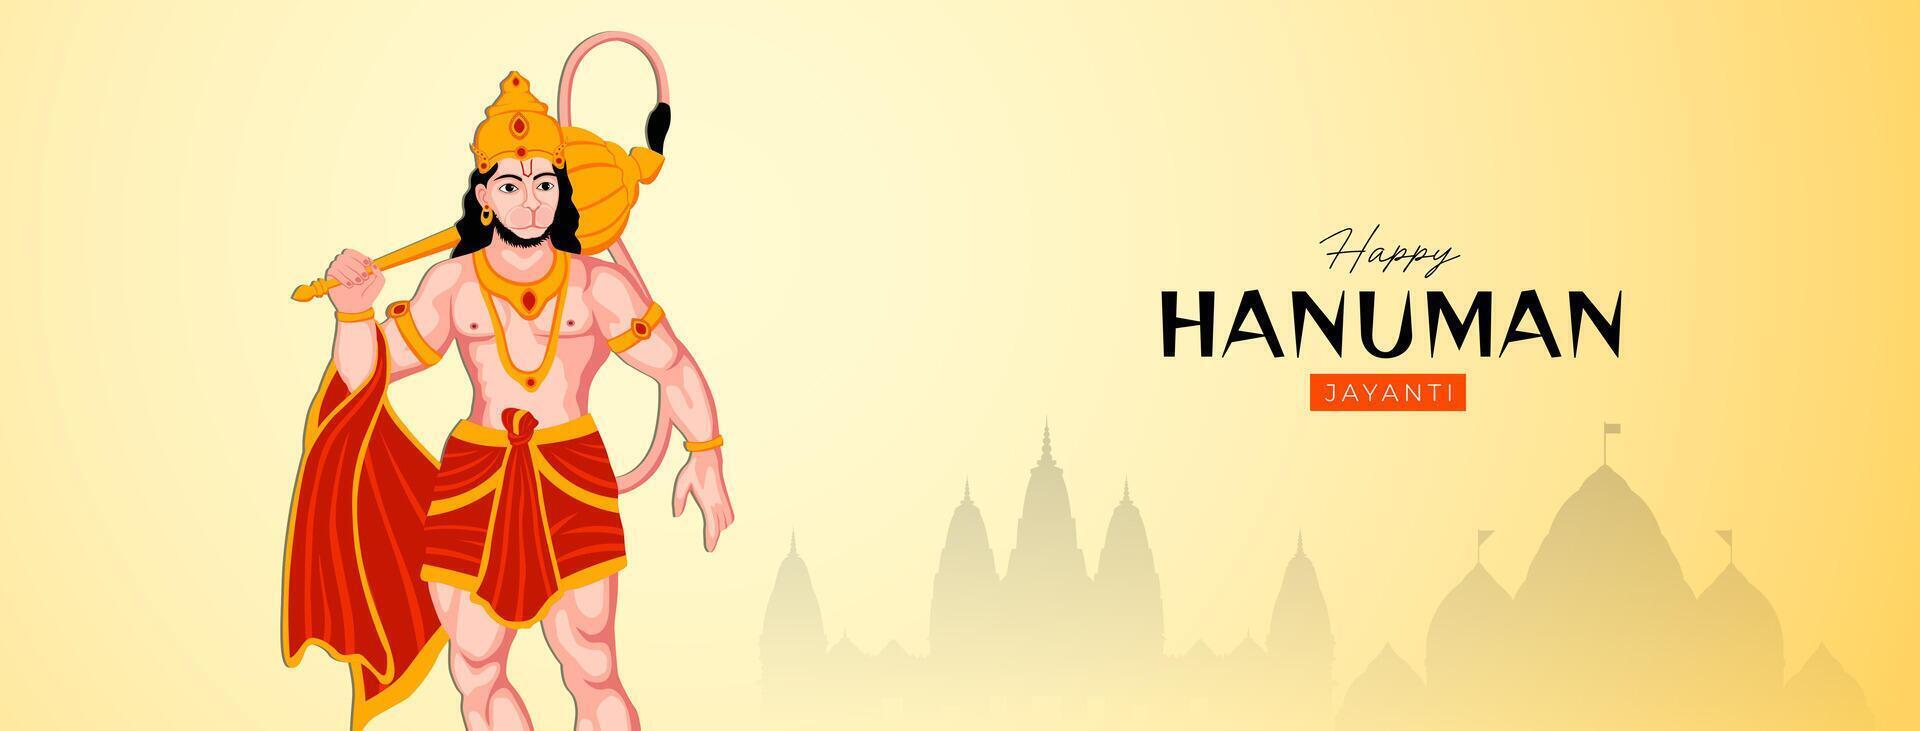 Lycklig hanuman jayanti social media posta de festival av Indien vektor